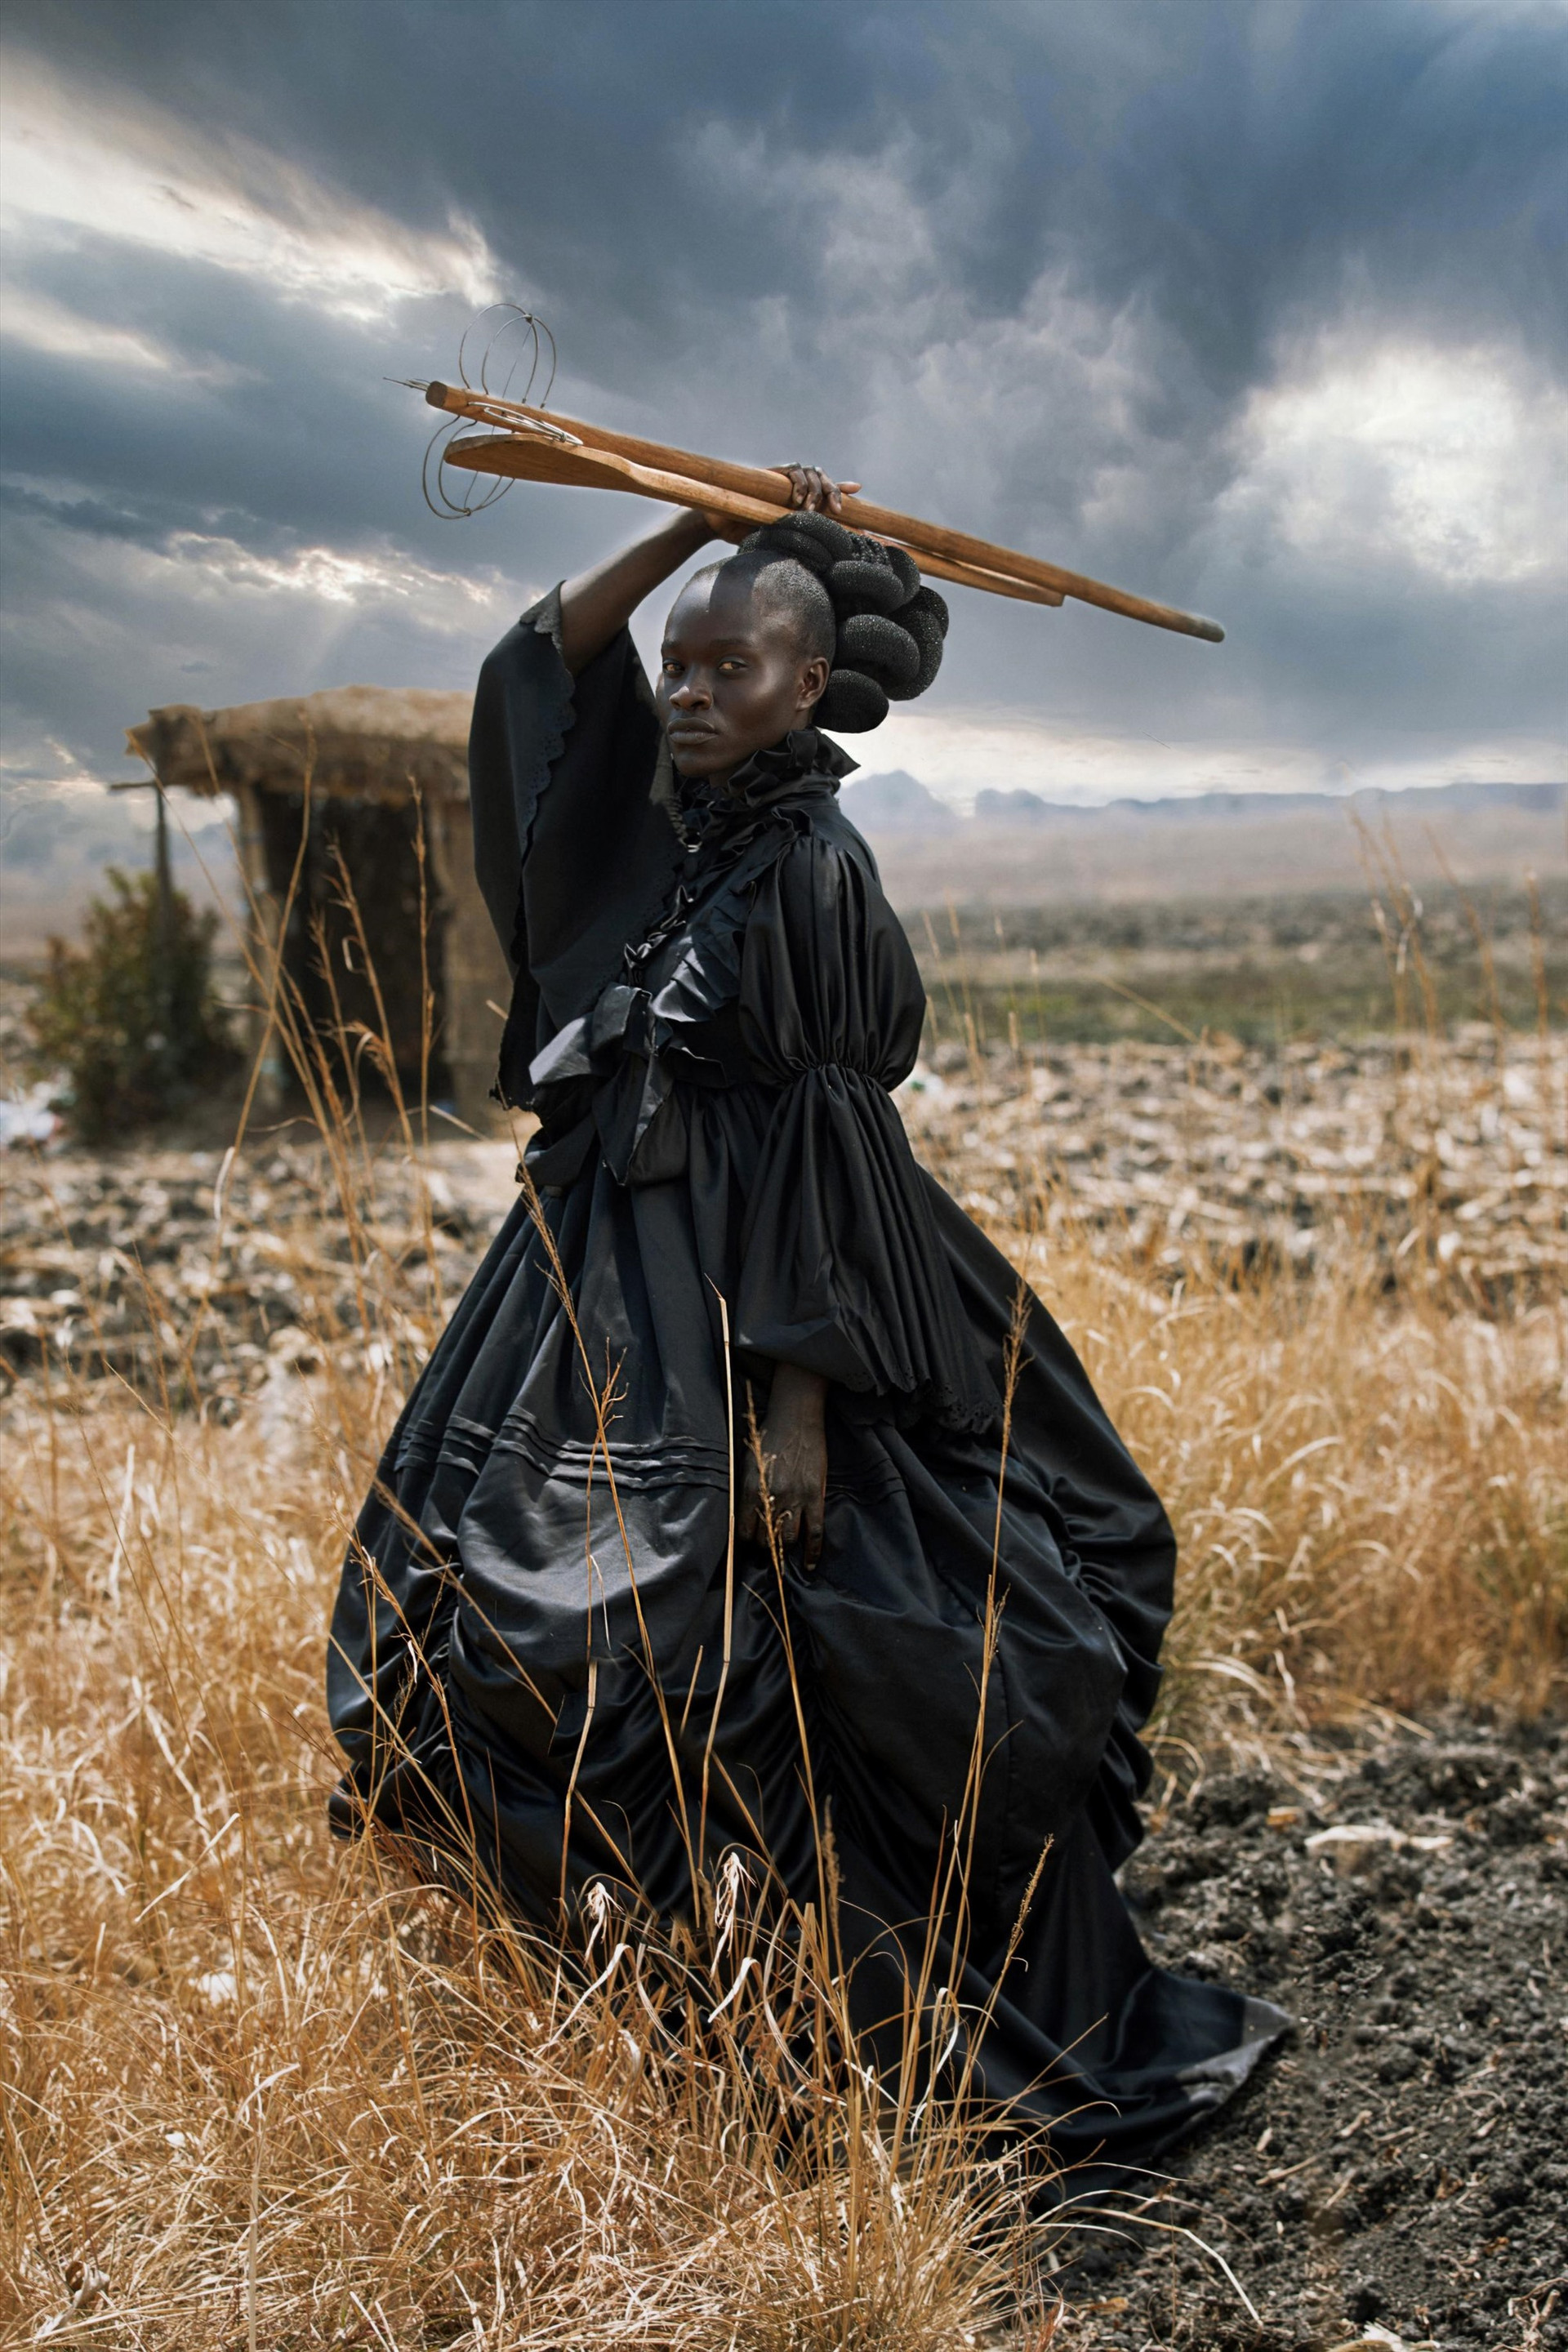 Bức ảnh hạng mục sáng tạo thuộc về Nhiếp ảnh gia người Zimbabwe Tamary Kudita đã chụp được hình ảnh này của một phụ nữ trẻ trong trang phục truyền thống thời Victoria cầm dụng cụ nấu ăn truyền thống của người Shona. Kudita đã giành được giải thưởng cao nhất trong hạng mục sáng tạo với hình ảnh này.